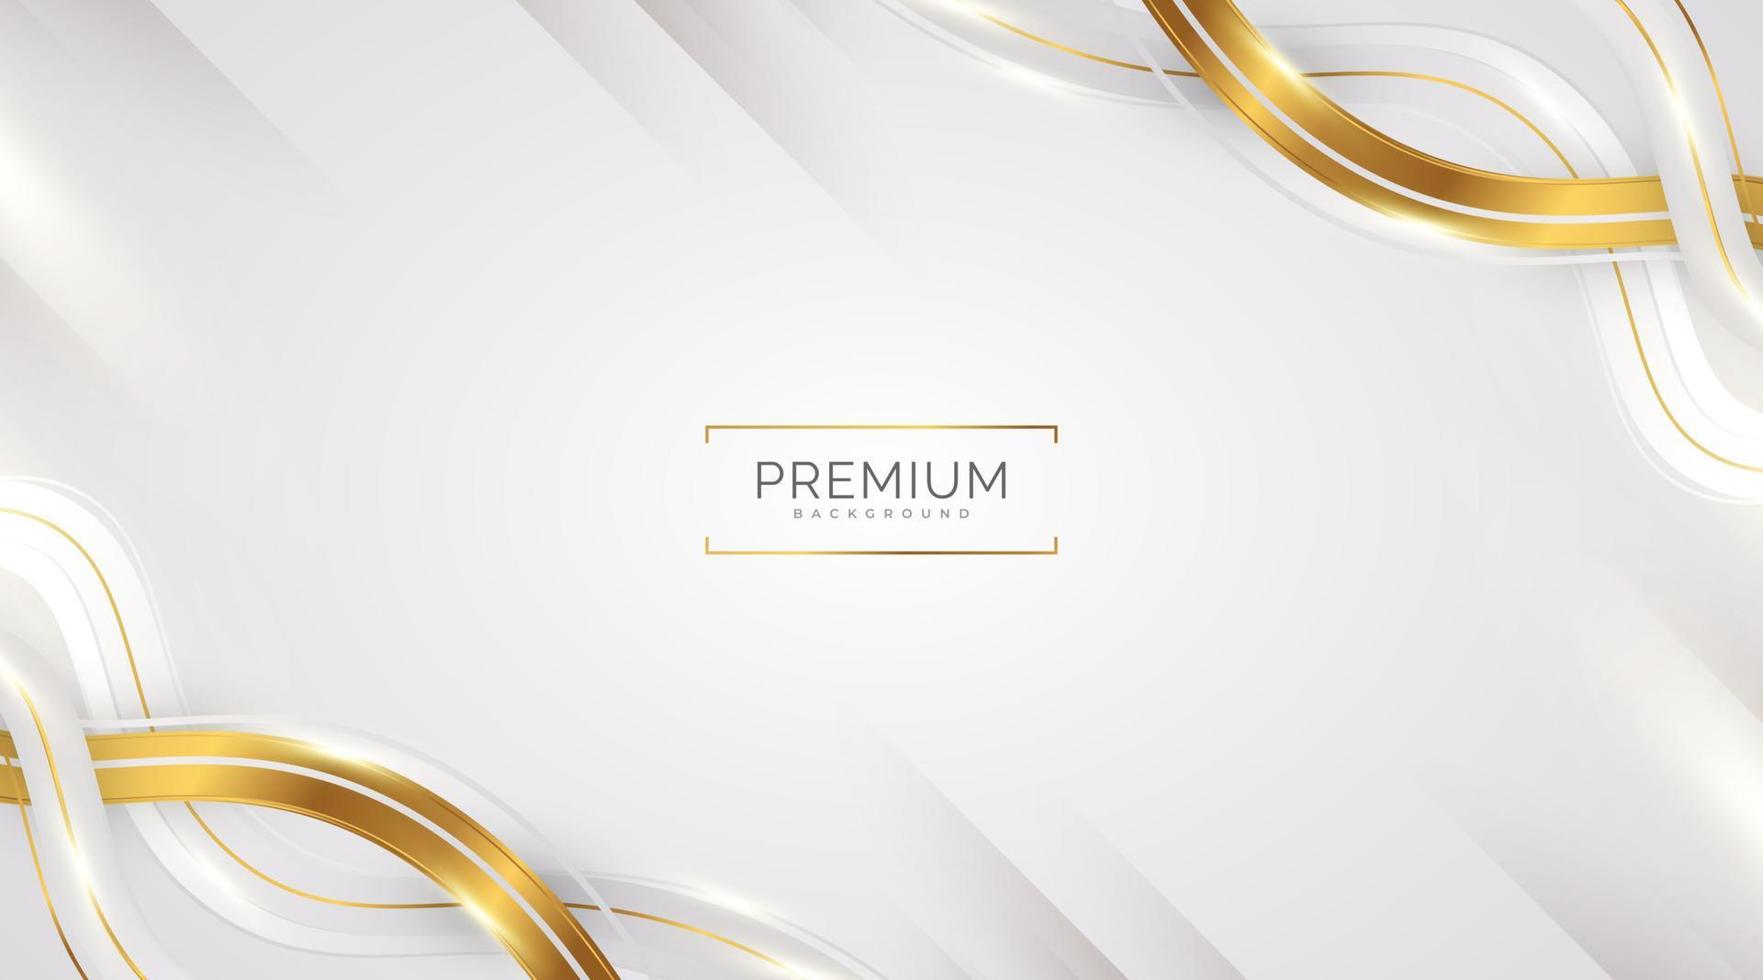 luxuriöser weißer und goldener hintergrund mit goldenen linien und papierschnittstil. erstklassiger grauer und goldener Hintergrund für Auszeichnungen, Nominierungen, Zeremonien, formelle Einladungen oder Zertifikate vektor